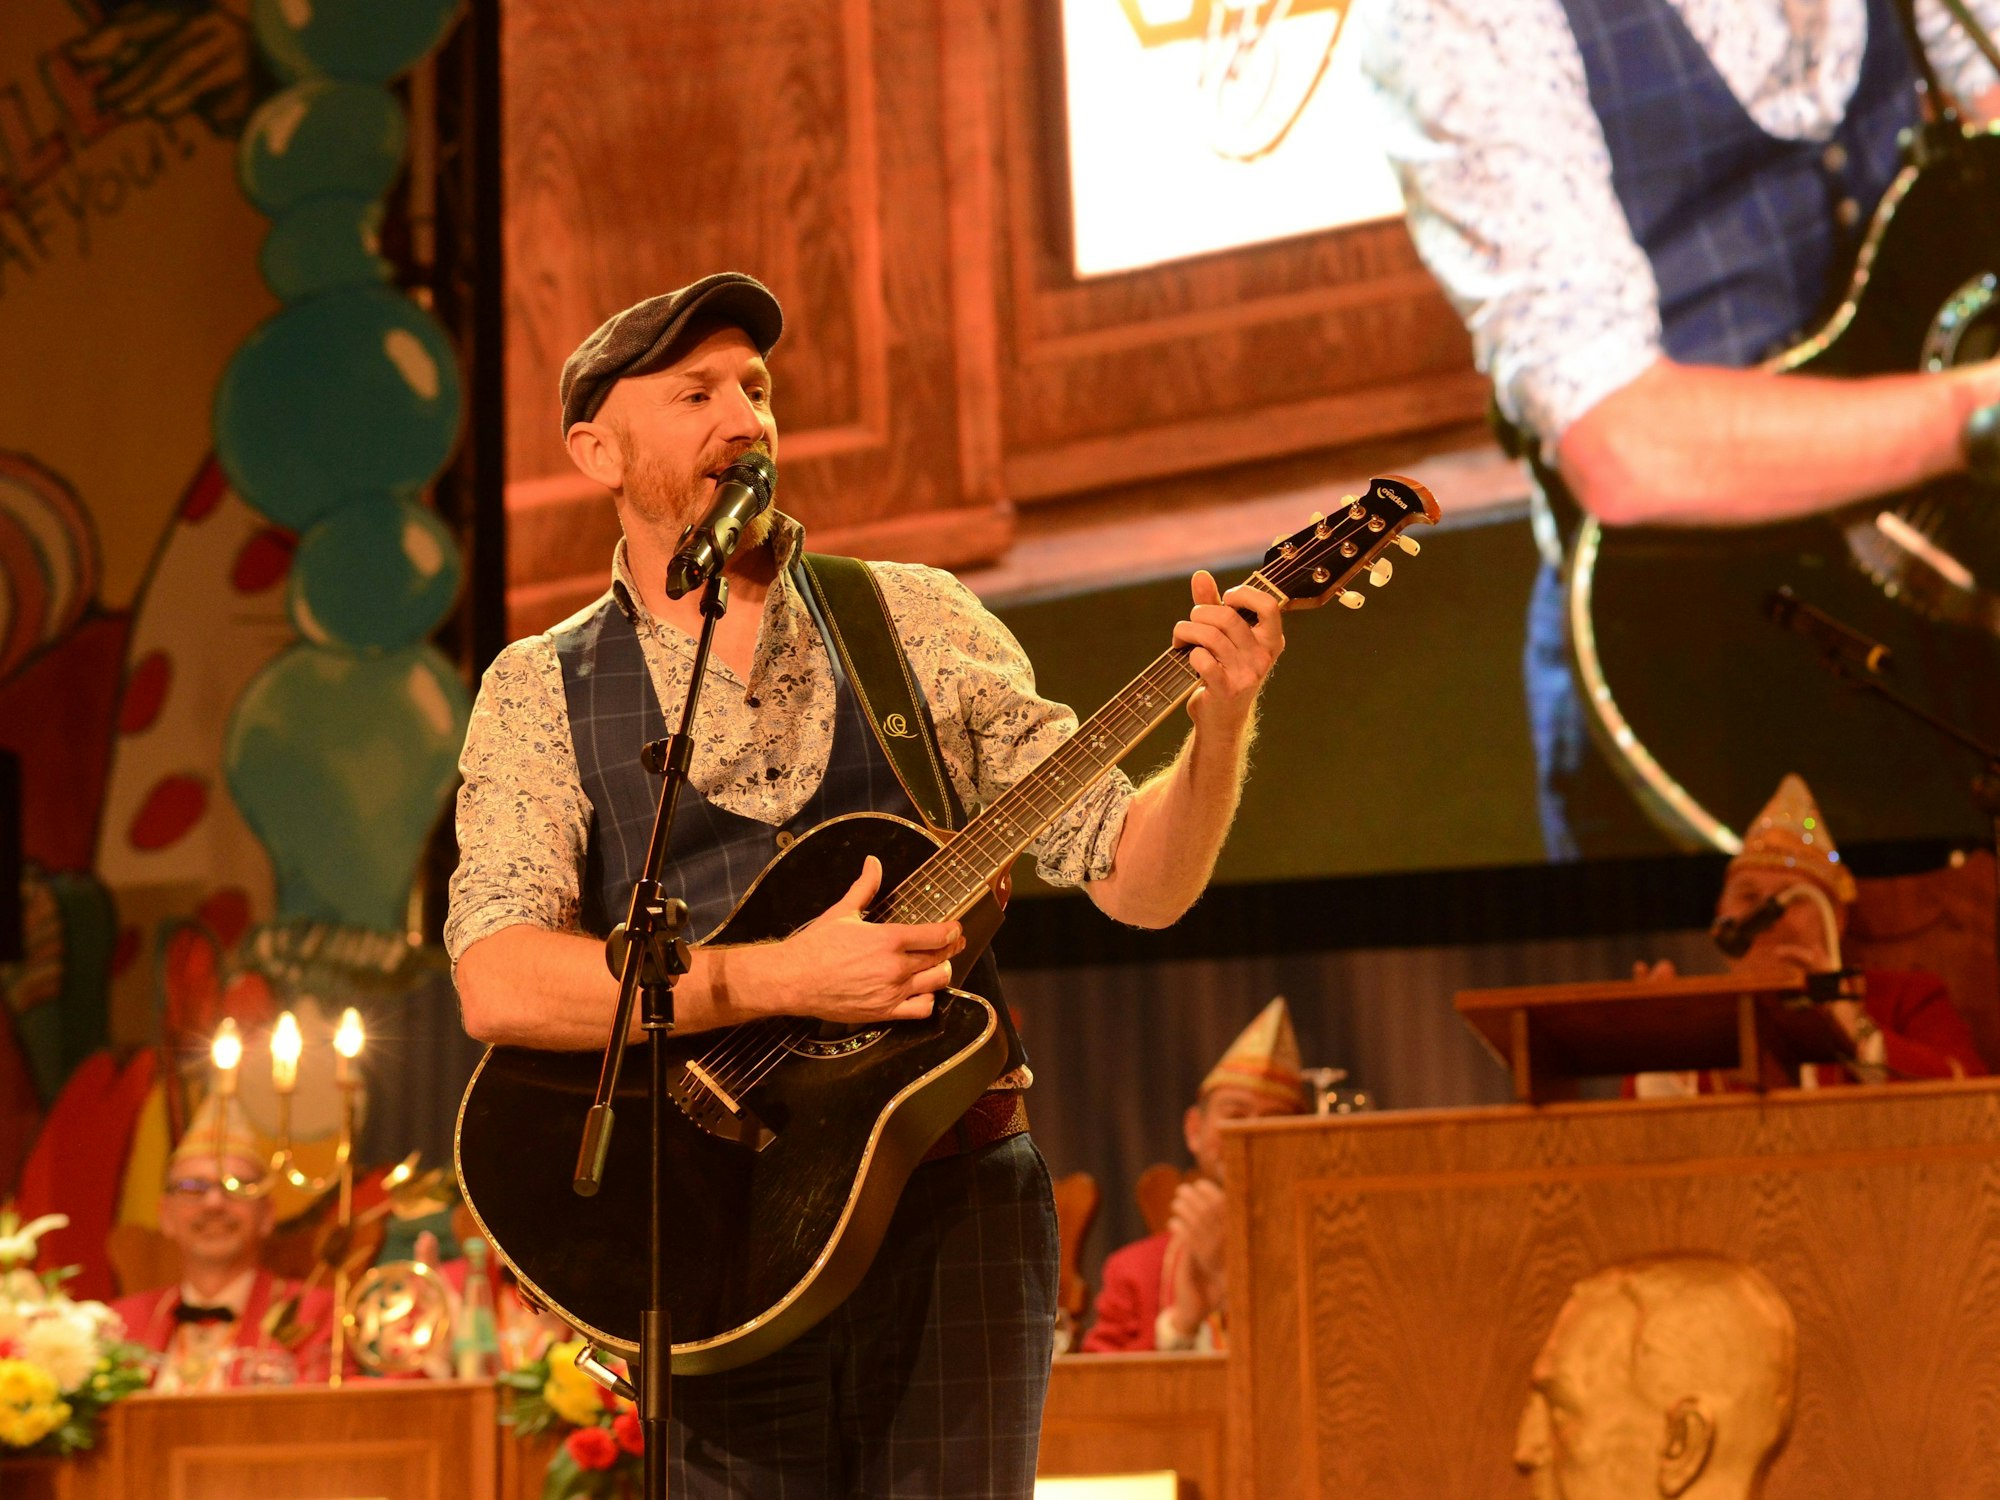 Martin Schopps mit Gitarre auf einer Bühne im Karneval.